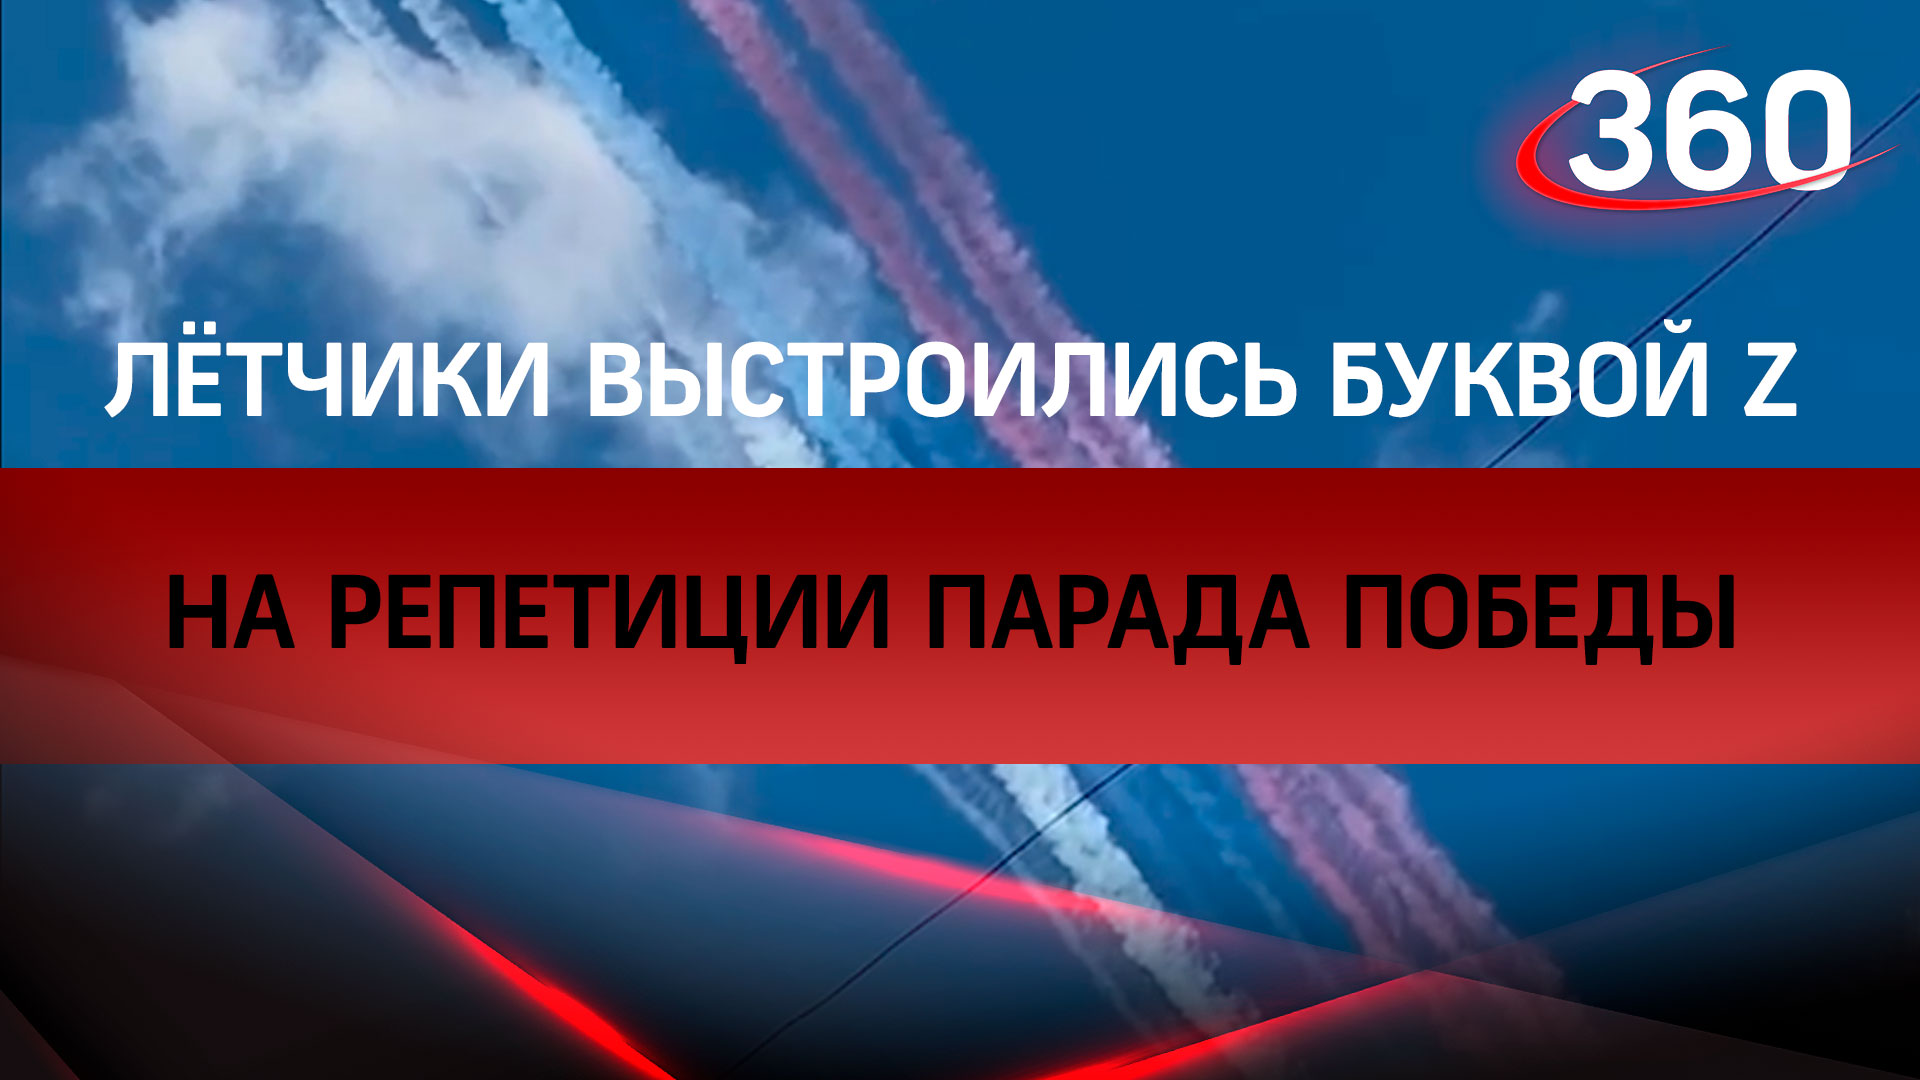 Российские лётчики выстроились буквой Z на репетиции парада Победы